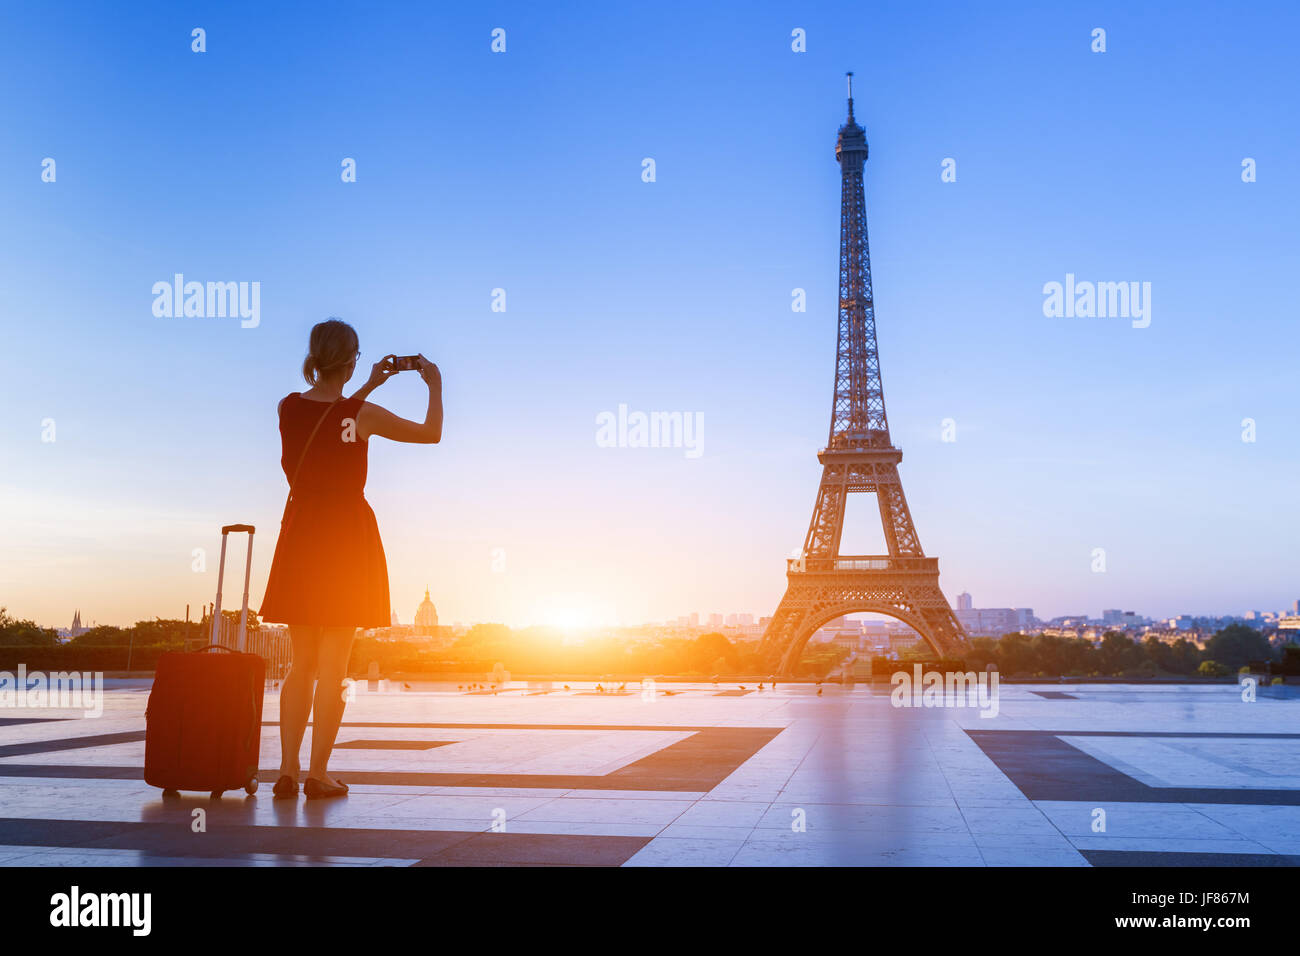 Woman traveler prend une photo de la Tour Eiffel du Trocadéro avec son smartphone pendant un week-end à Paris, France Banque D'Images